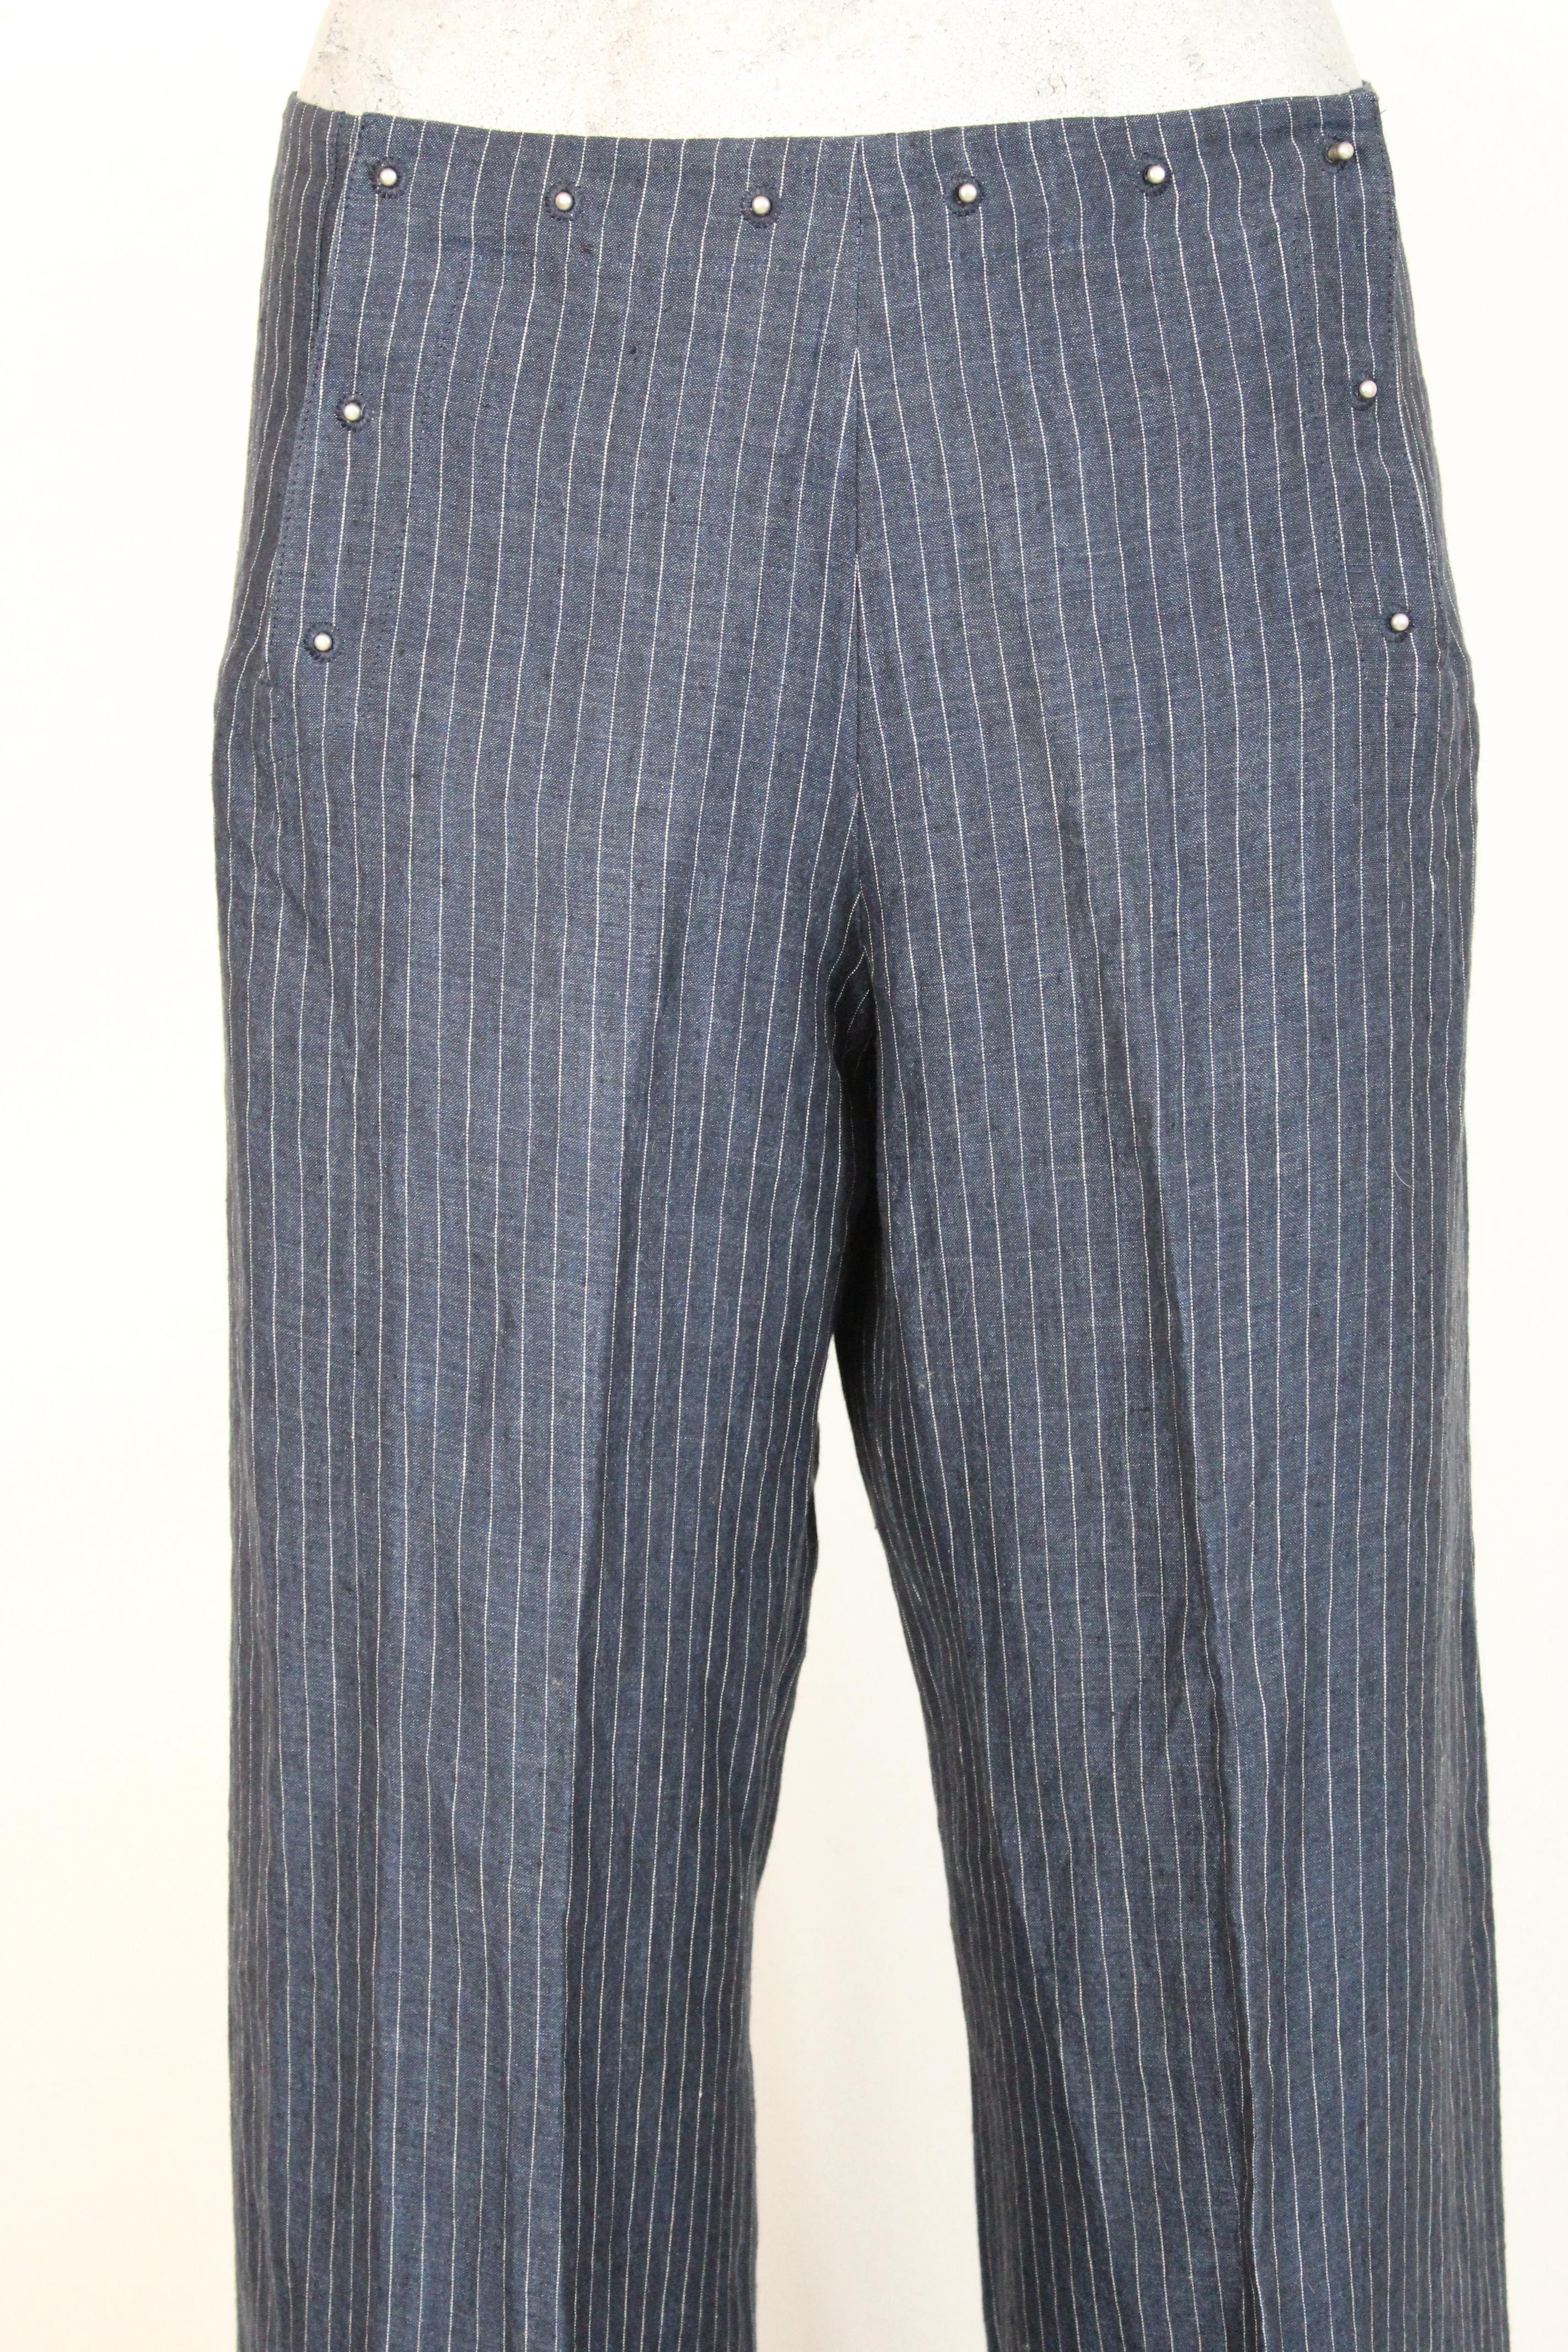 Jean Paul Gaultier Blue Gray Linen Striped Trousers 1